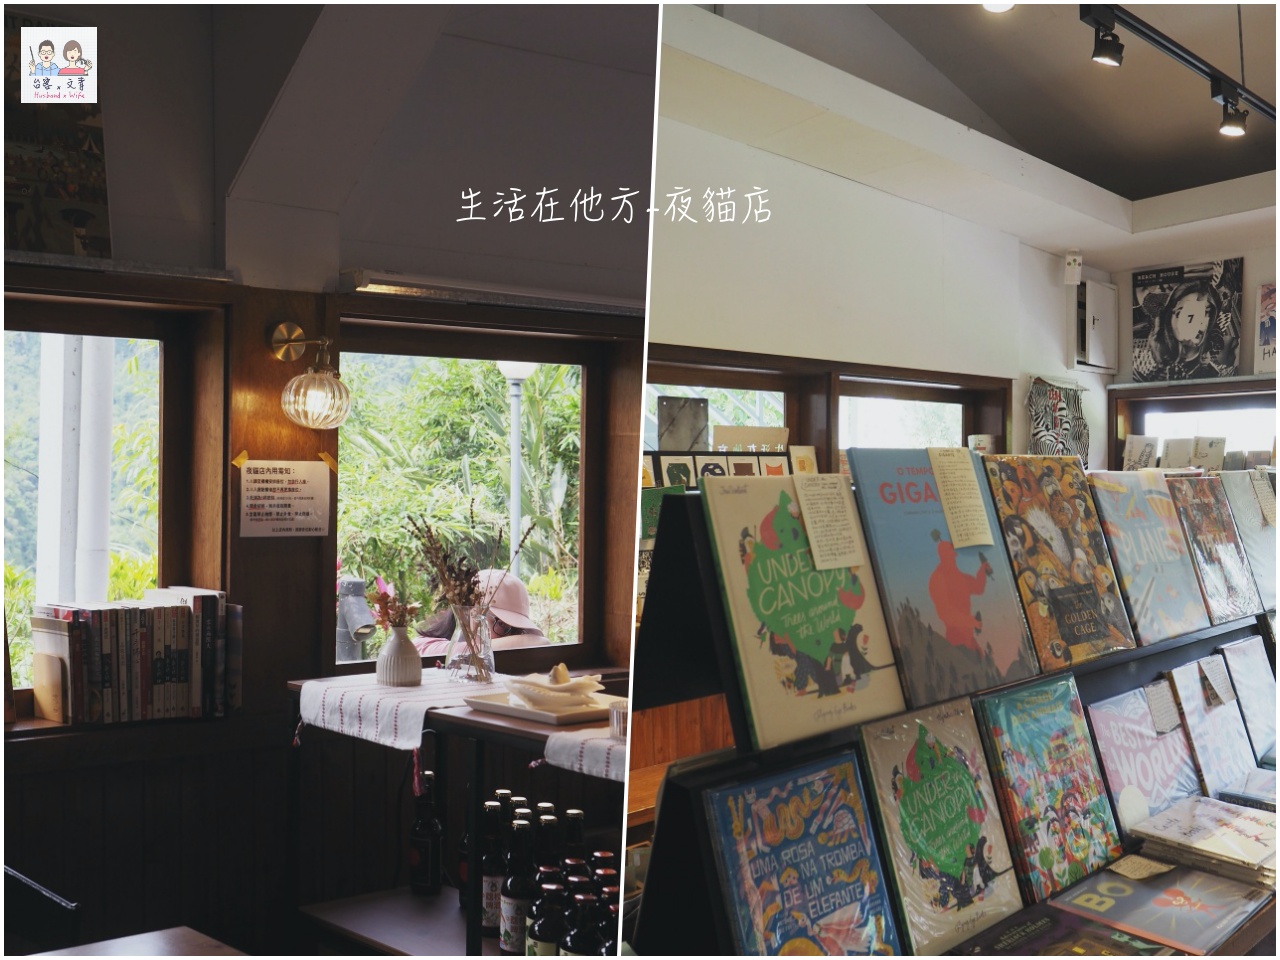 【台北⋈咖啡】開至深夜的繪本咖啡店「生活在他方-夜貓店」 在山林裡眺望夜景和星空 @台客和文青的宜居生活𖤣𖤥𖠿𖤥𖤣